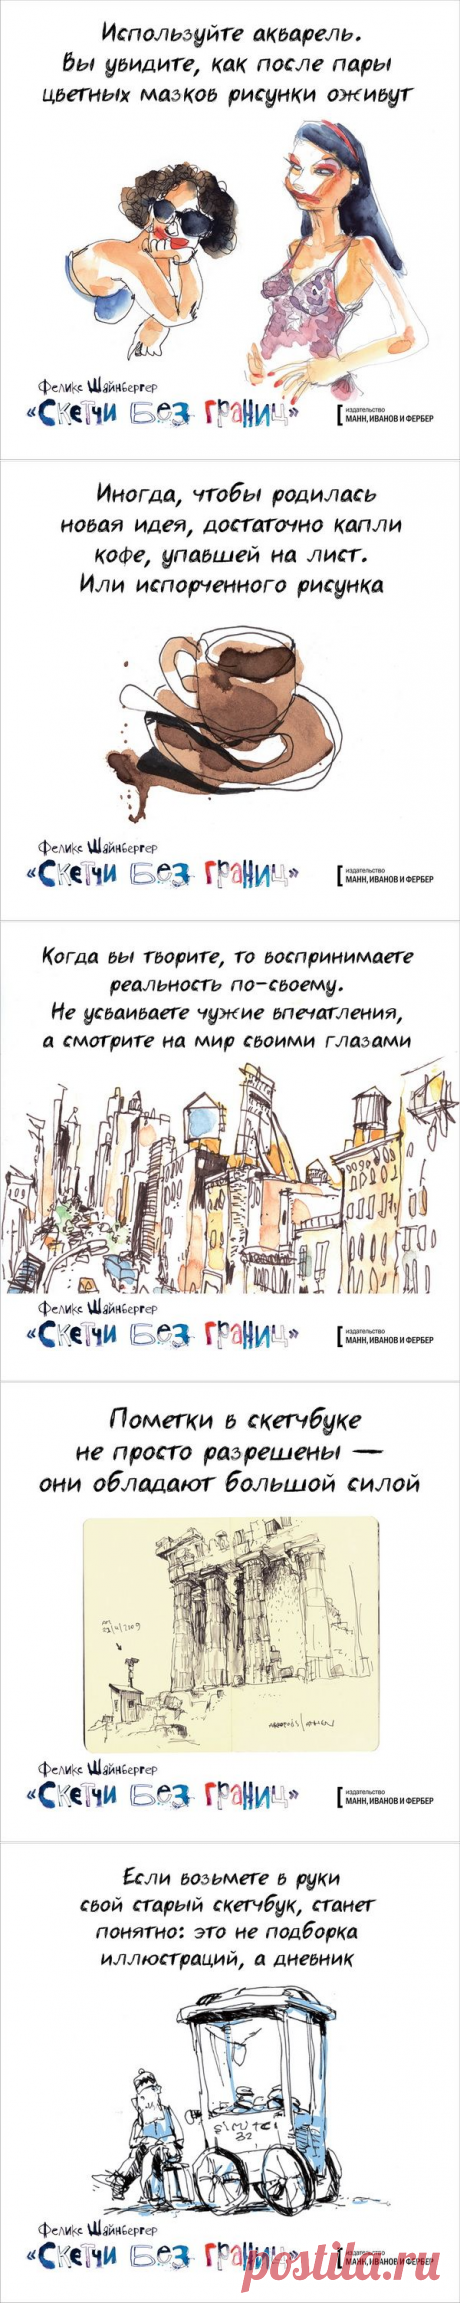 Давайте рисовать! Открытки по книге «Скетчи без границ» | Блог издательства «Манн, Иванов и Фербер»